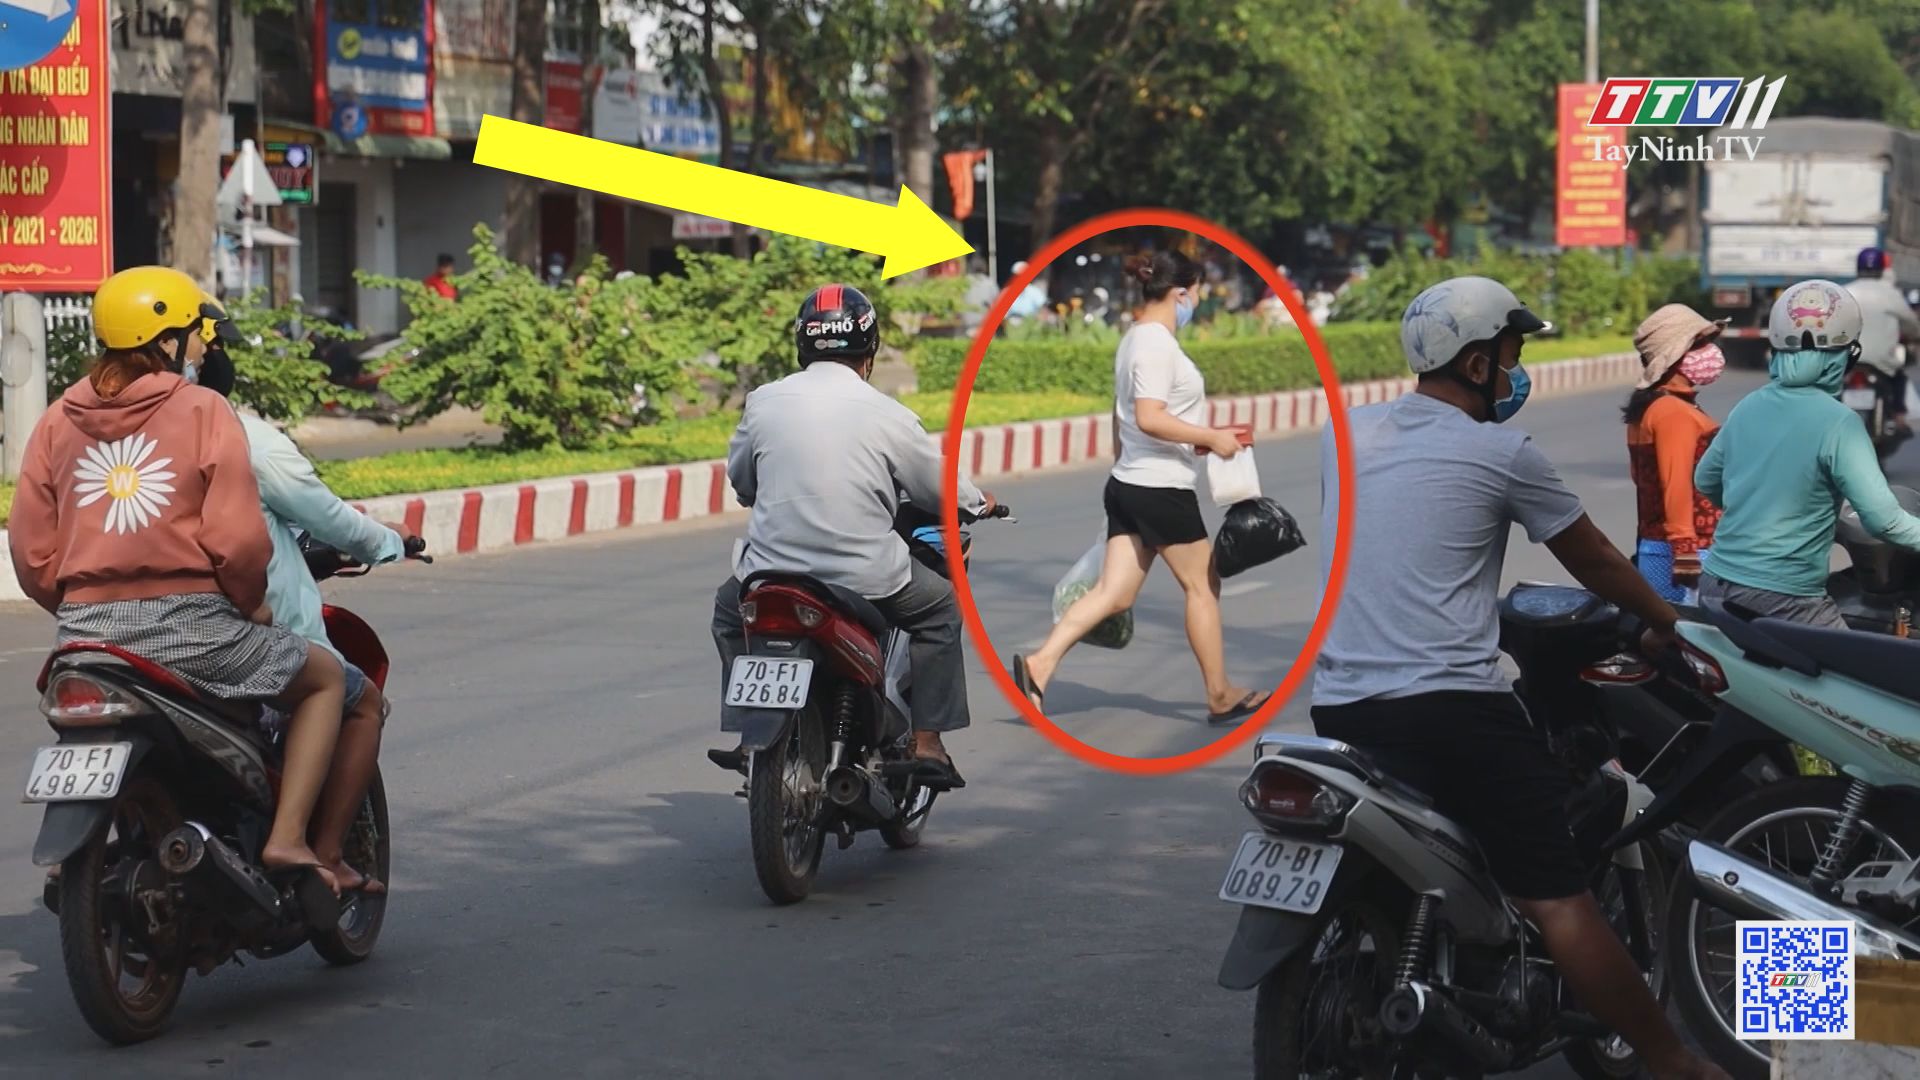 TayNinhTV | VĂN HÓA GIAO THÔNG | Đi bộ sang đường, đừng cói thường tính mạng